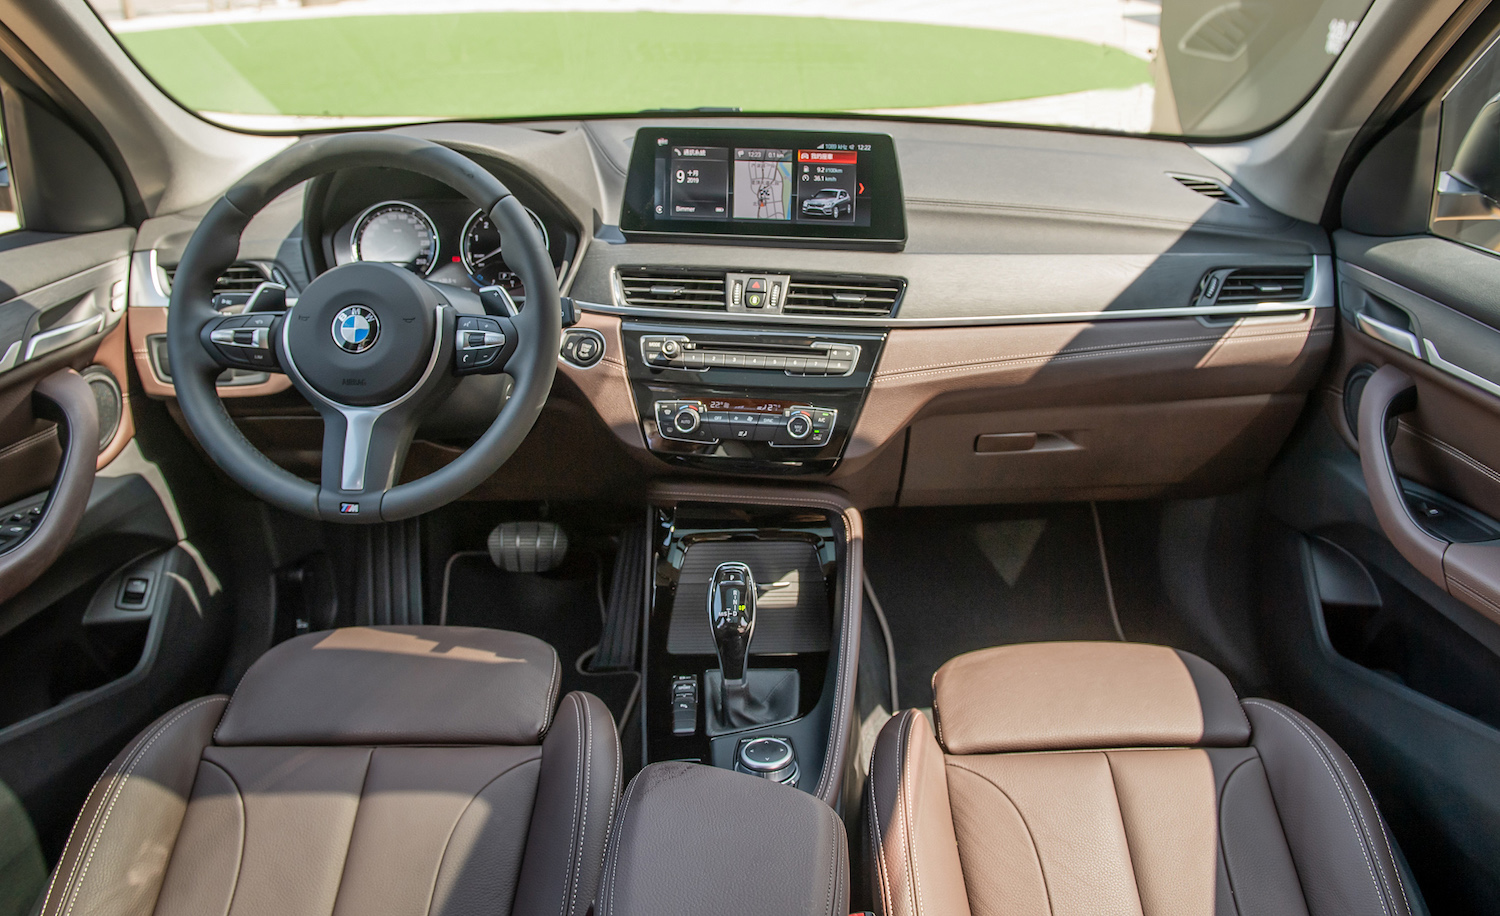 全新 BMW X1 標配雙前座電動座椅與 M 款多功能真皮方向盤。